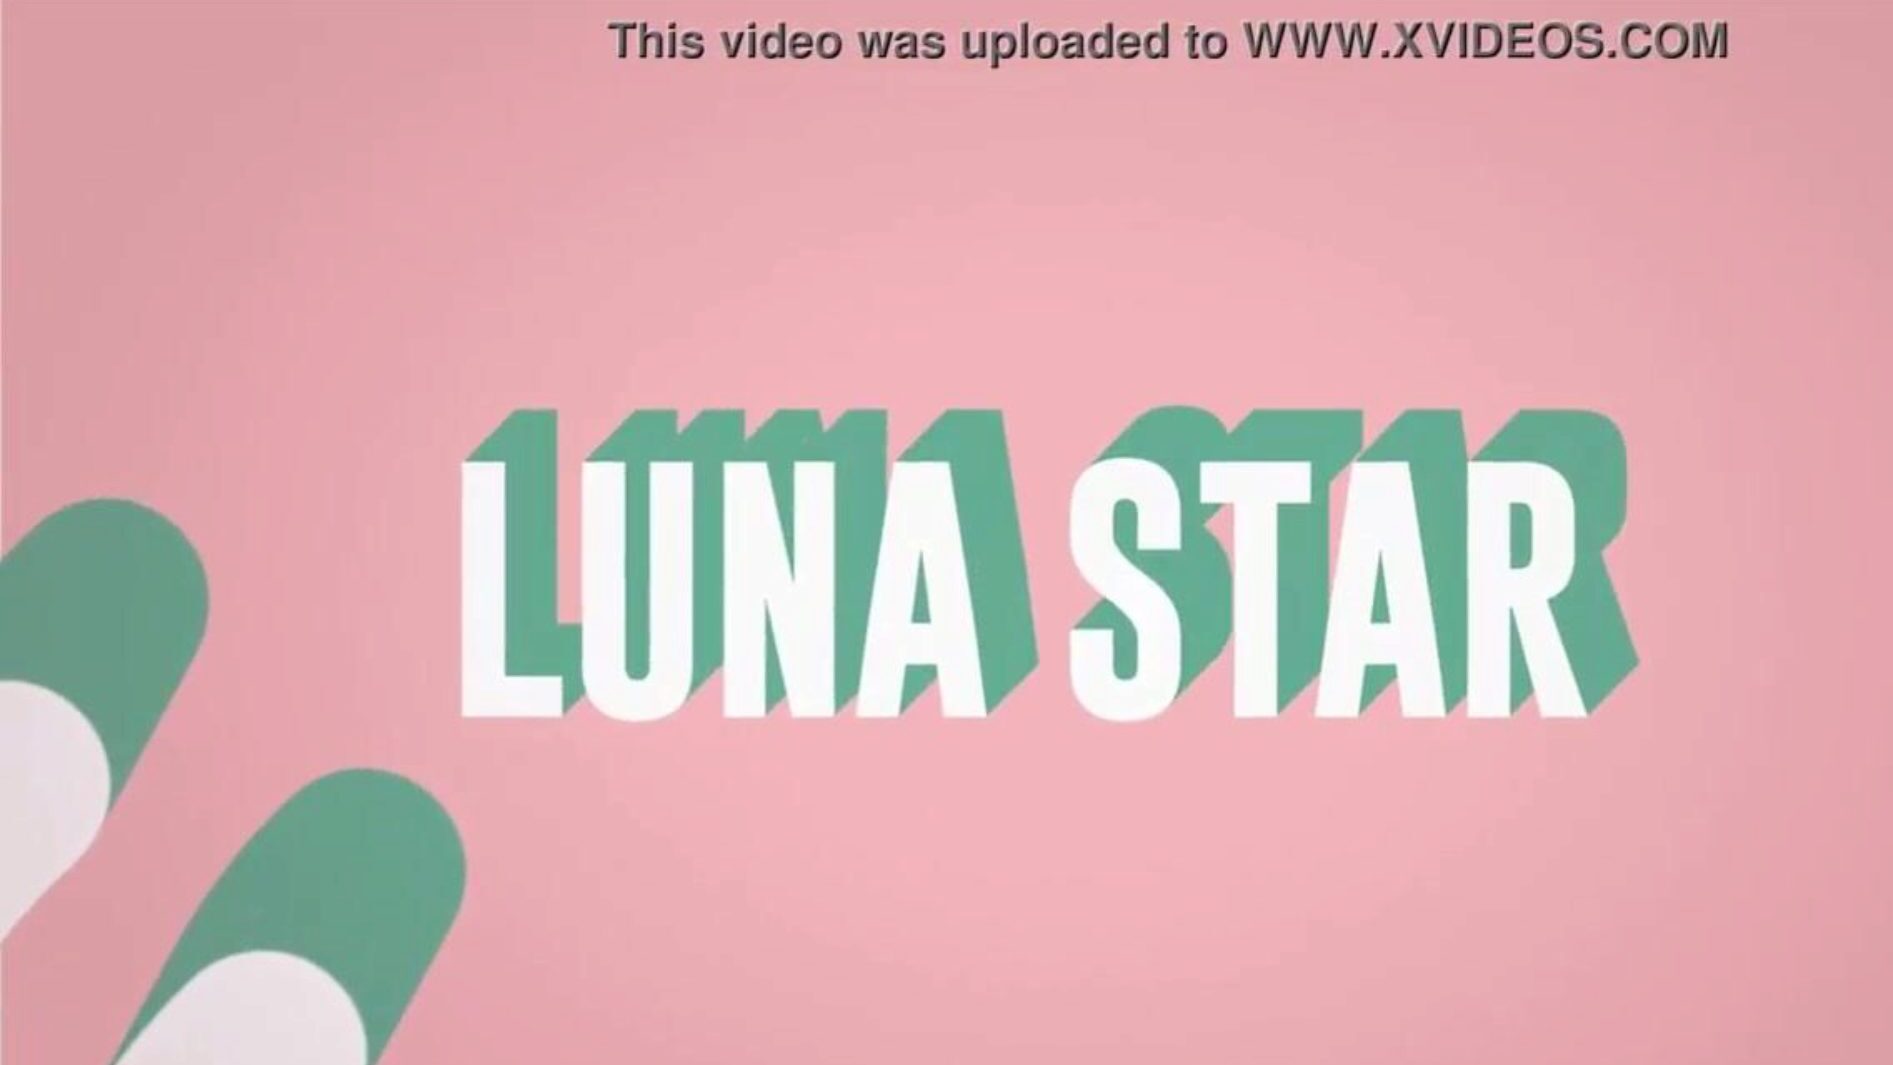 het is mijn verdomde wifi: Brazzers optreden met Luna Star; zie volledig op www.zzfull.com/luna